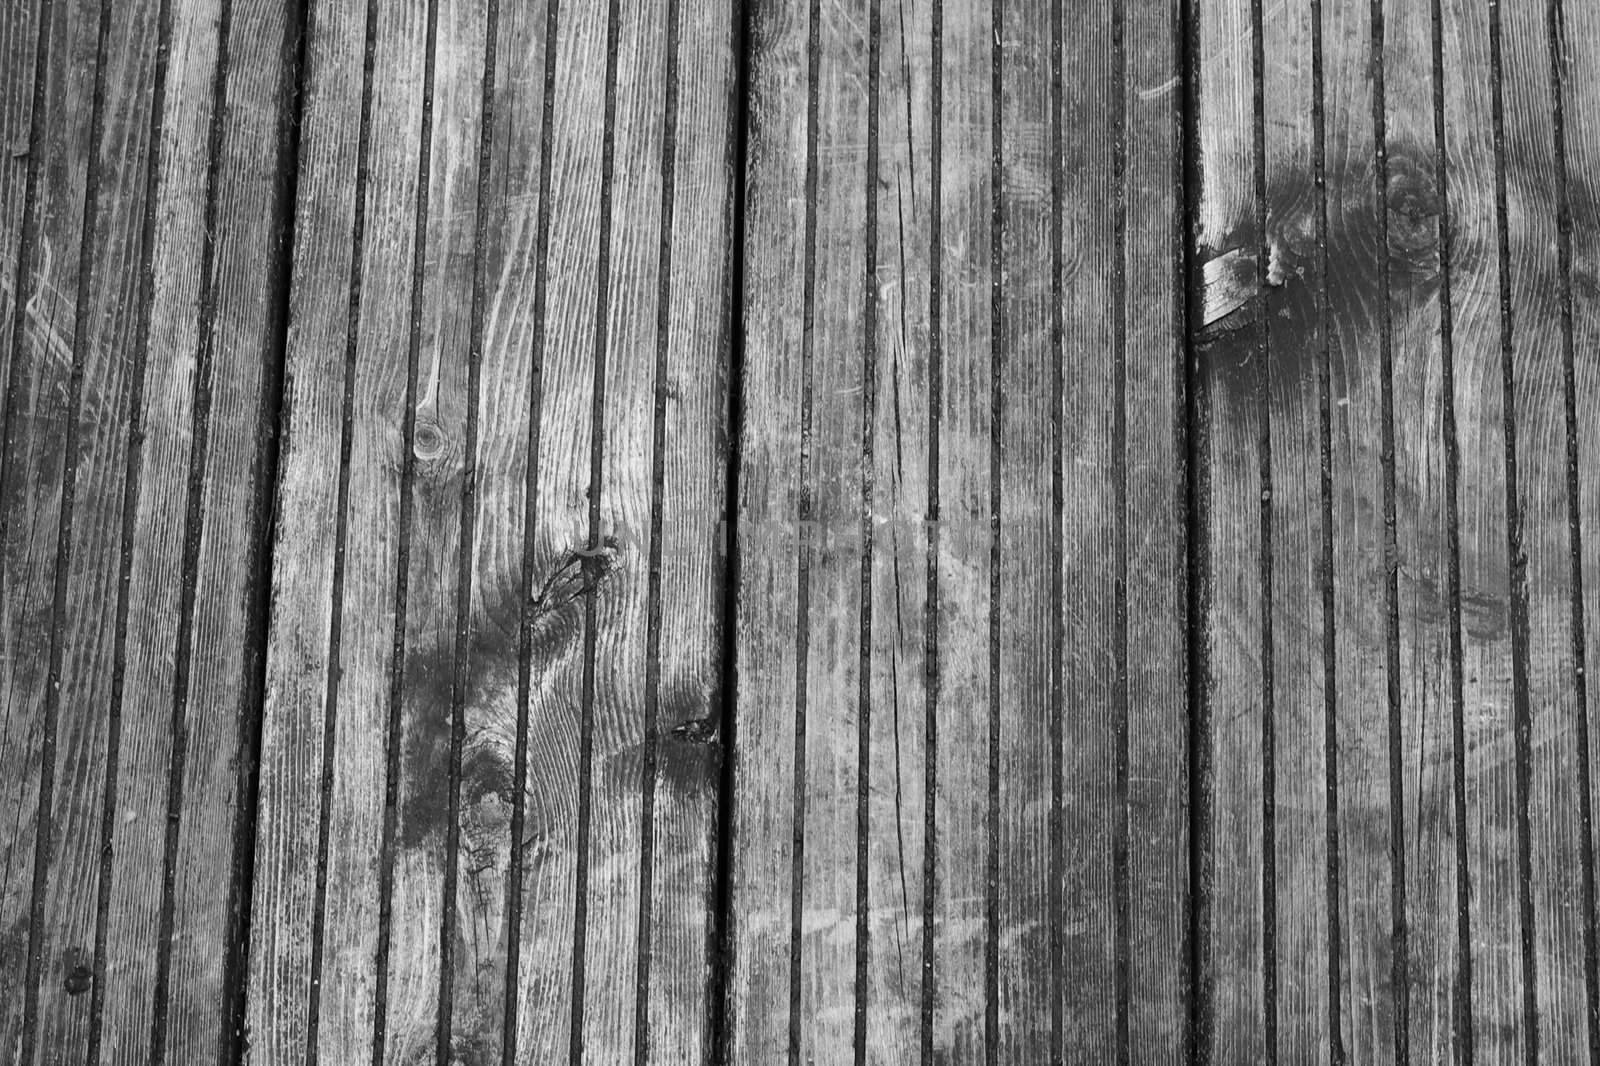 old, weathered wooden floor, taken outdoors